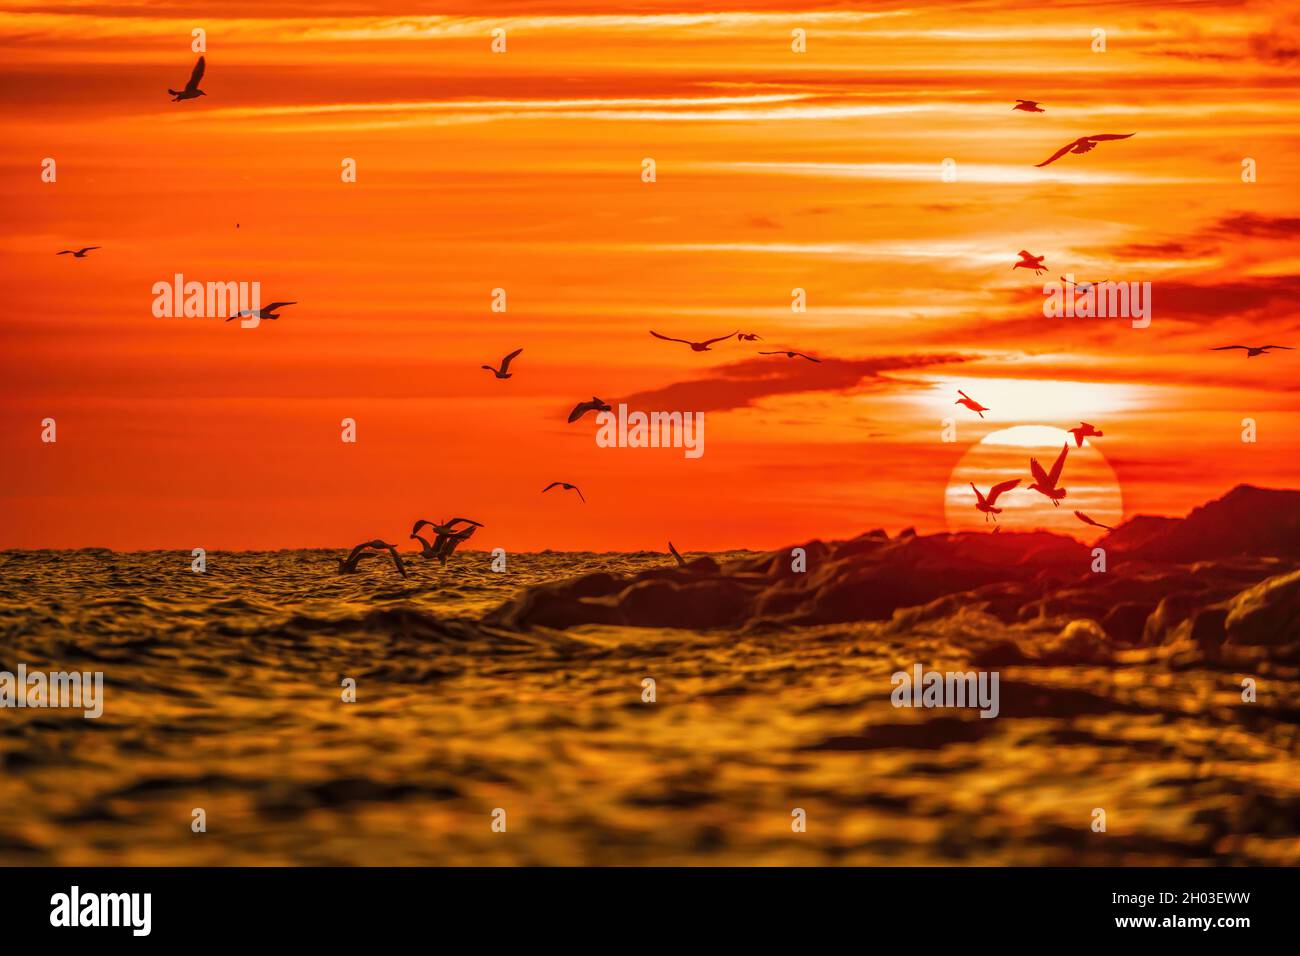 Eine Schar Möwen fliegt und fischt im Meer. Warmer Sonnenuntergang Himmel über dem Meer, Sonneneinstrahlung. Silhouetten von Möwen, die in Zeitlupe vom fliegen Stockfoto